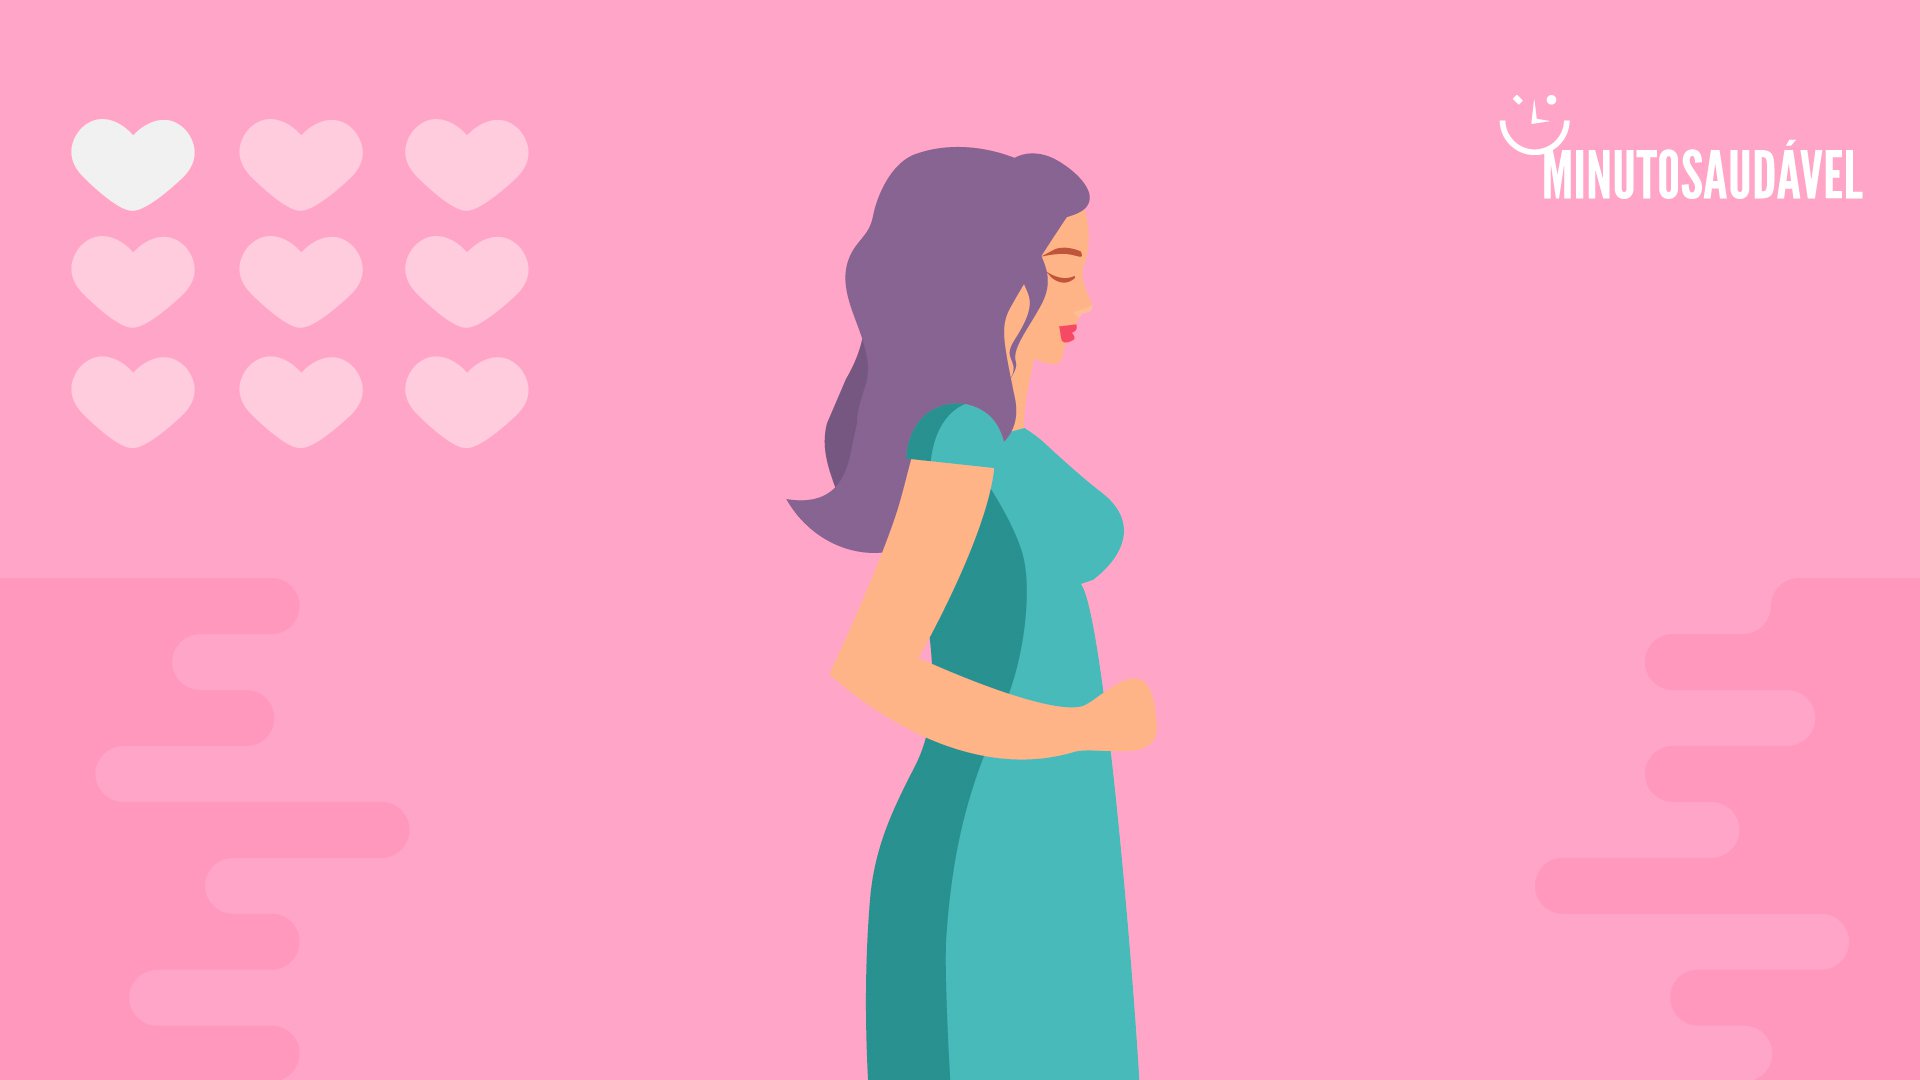 Foto de capa do artigo "Primeiro mês de gravidez: quais são os cuidados e mudanças?"